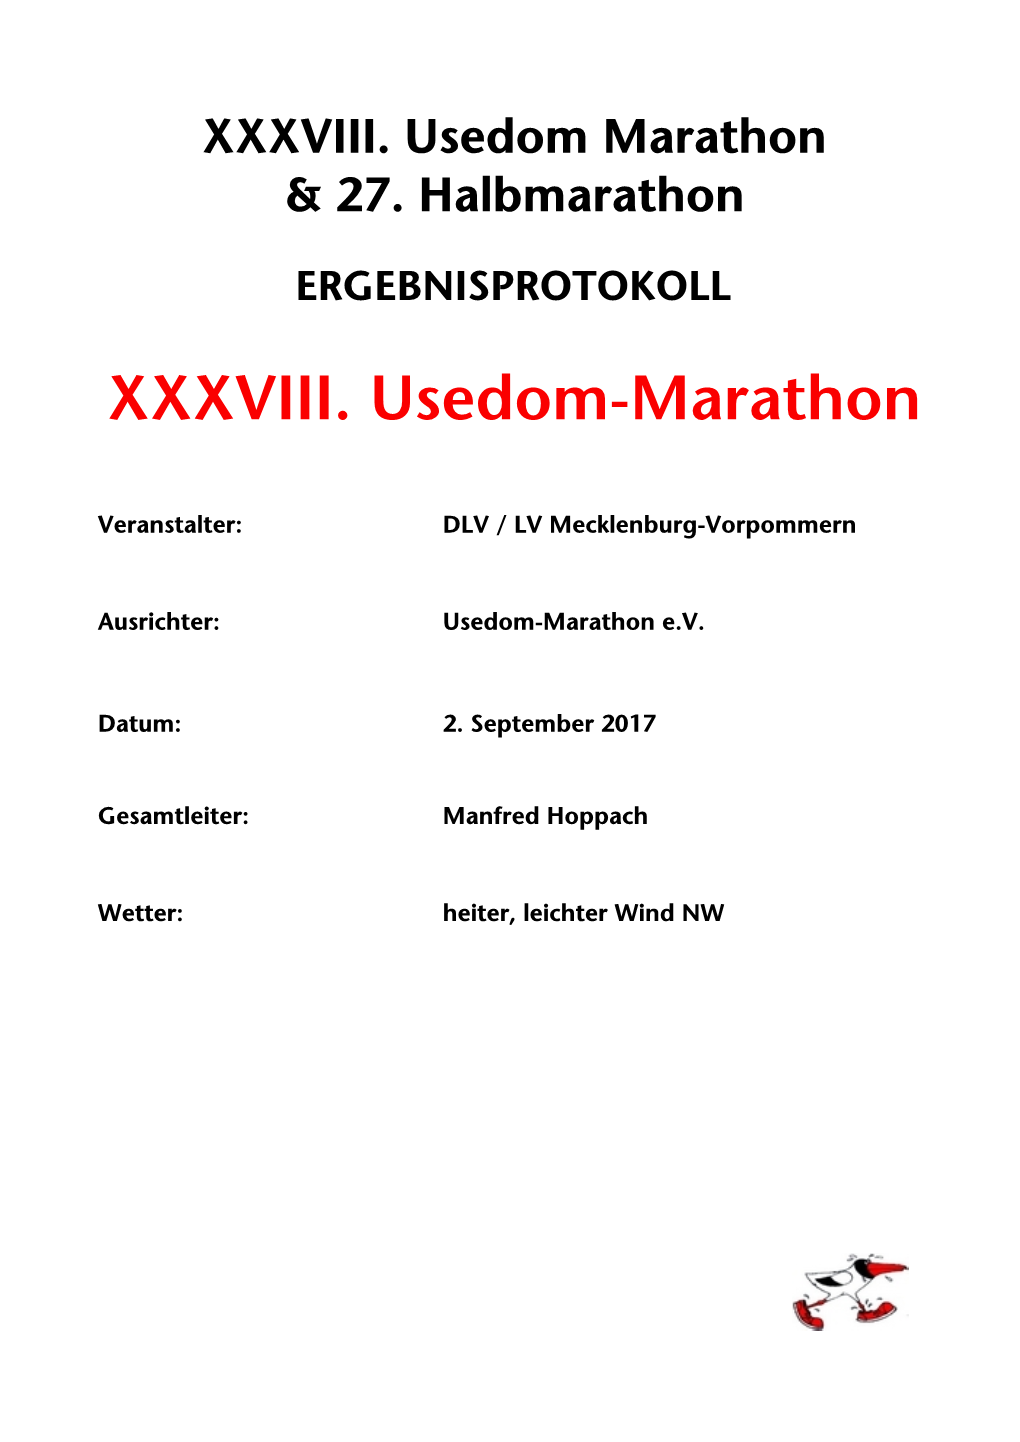 Ergebnisliste AK XXXVIII. Usedom-Marathon